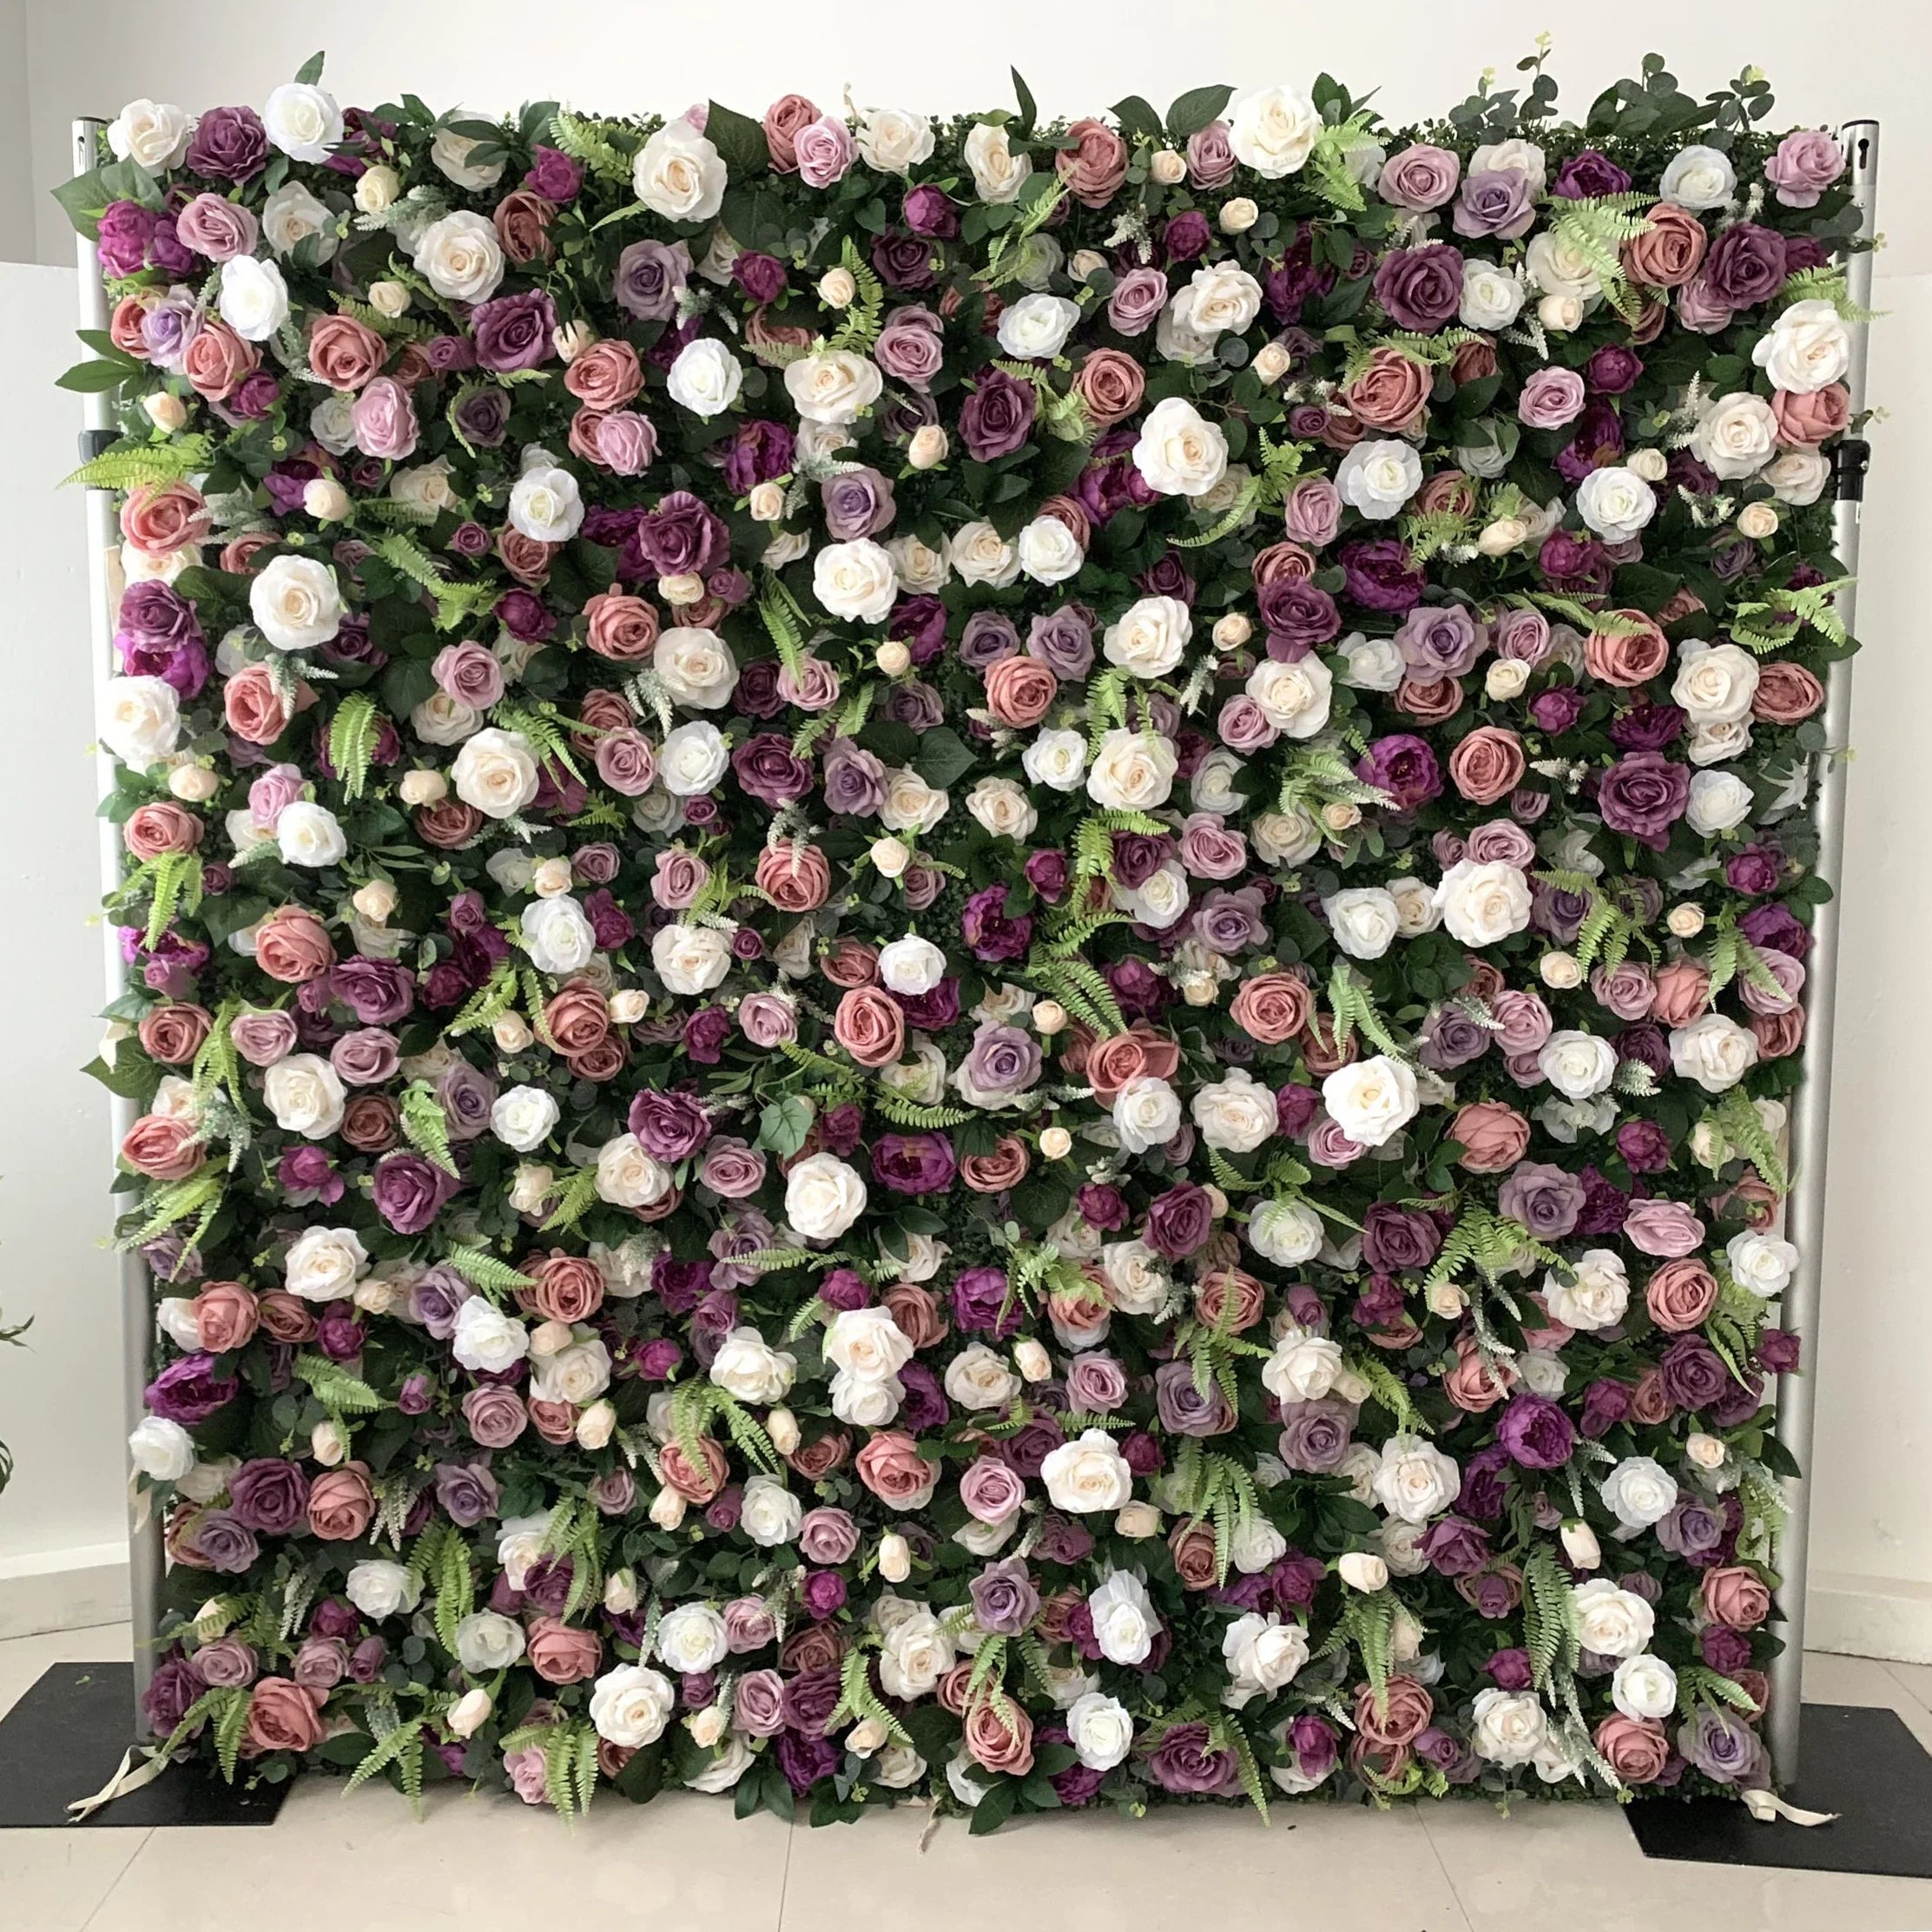 Magnifique mur de fleurs artificielles en tissu enroulé 3D magenta et rose – Parfait pour les mariages en forêt, les événements et la décoration de la maison - VF-154 